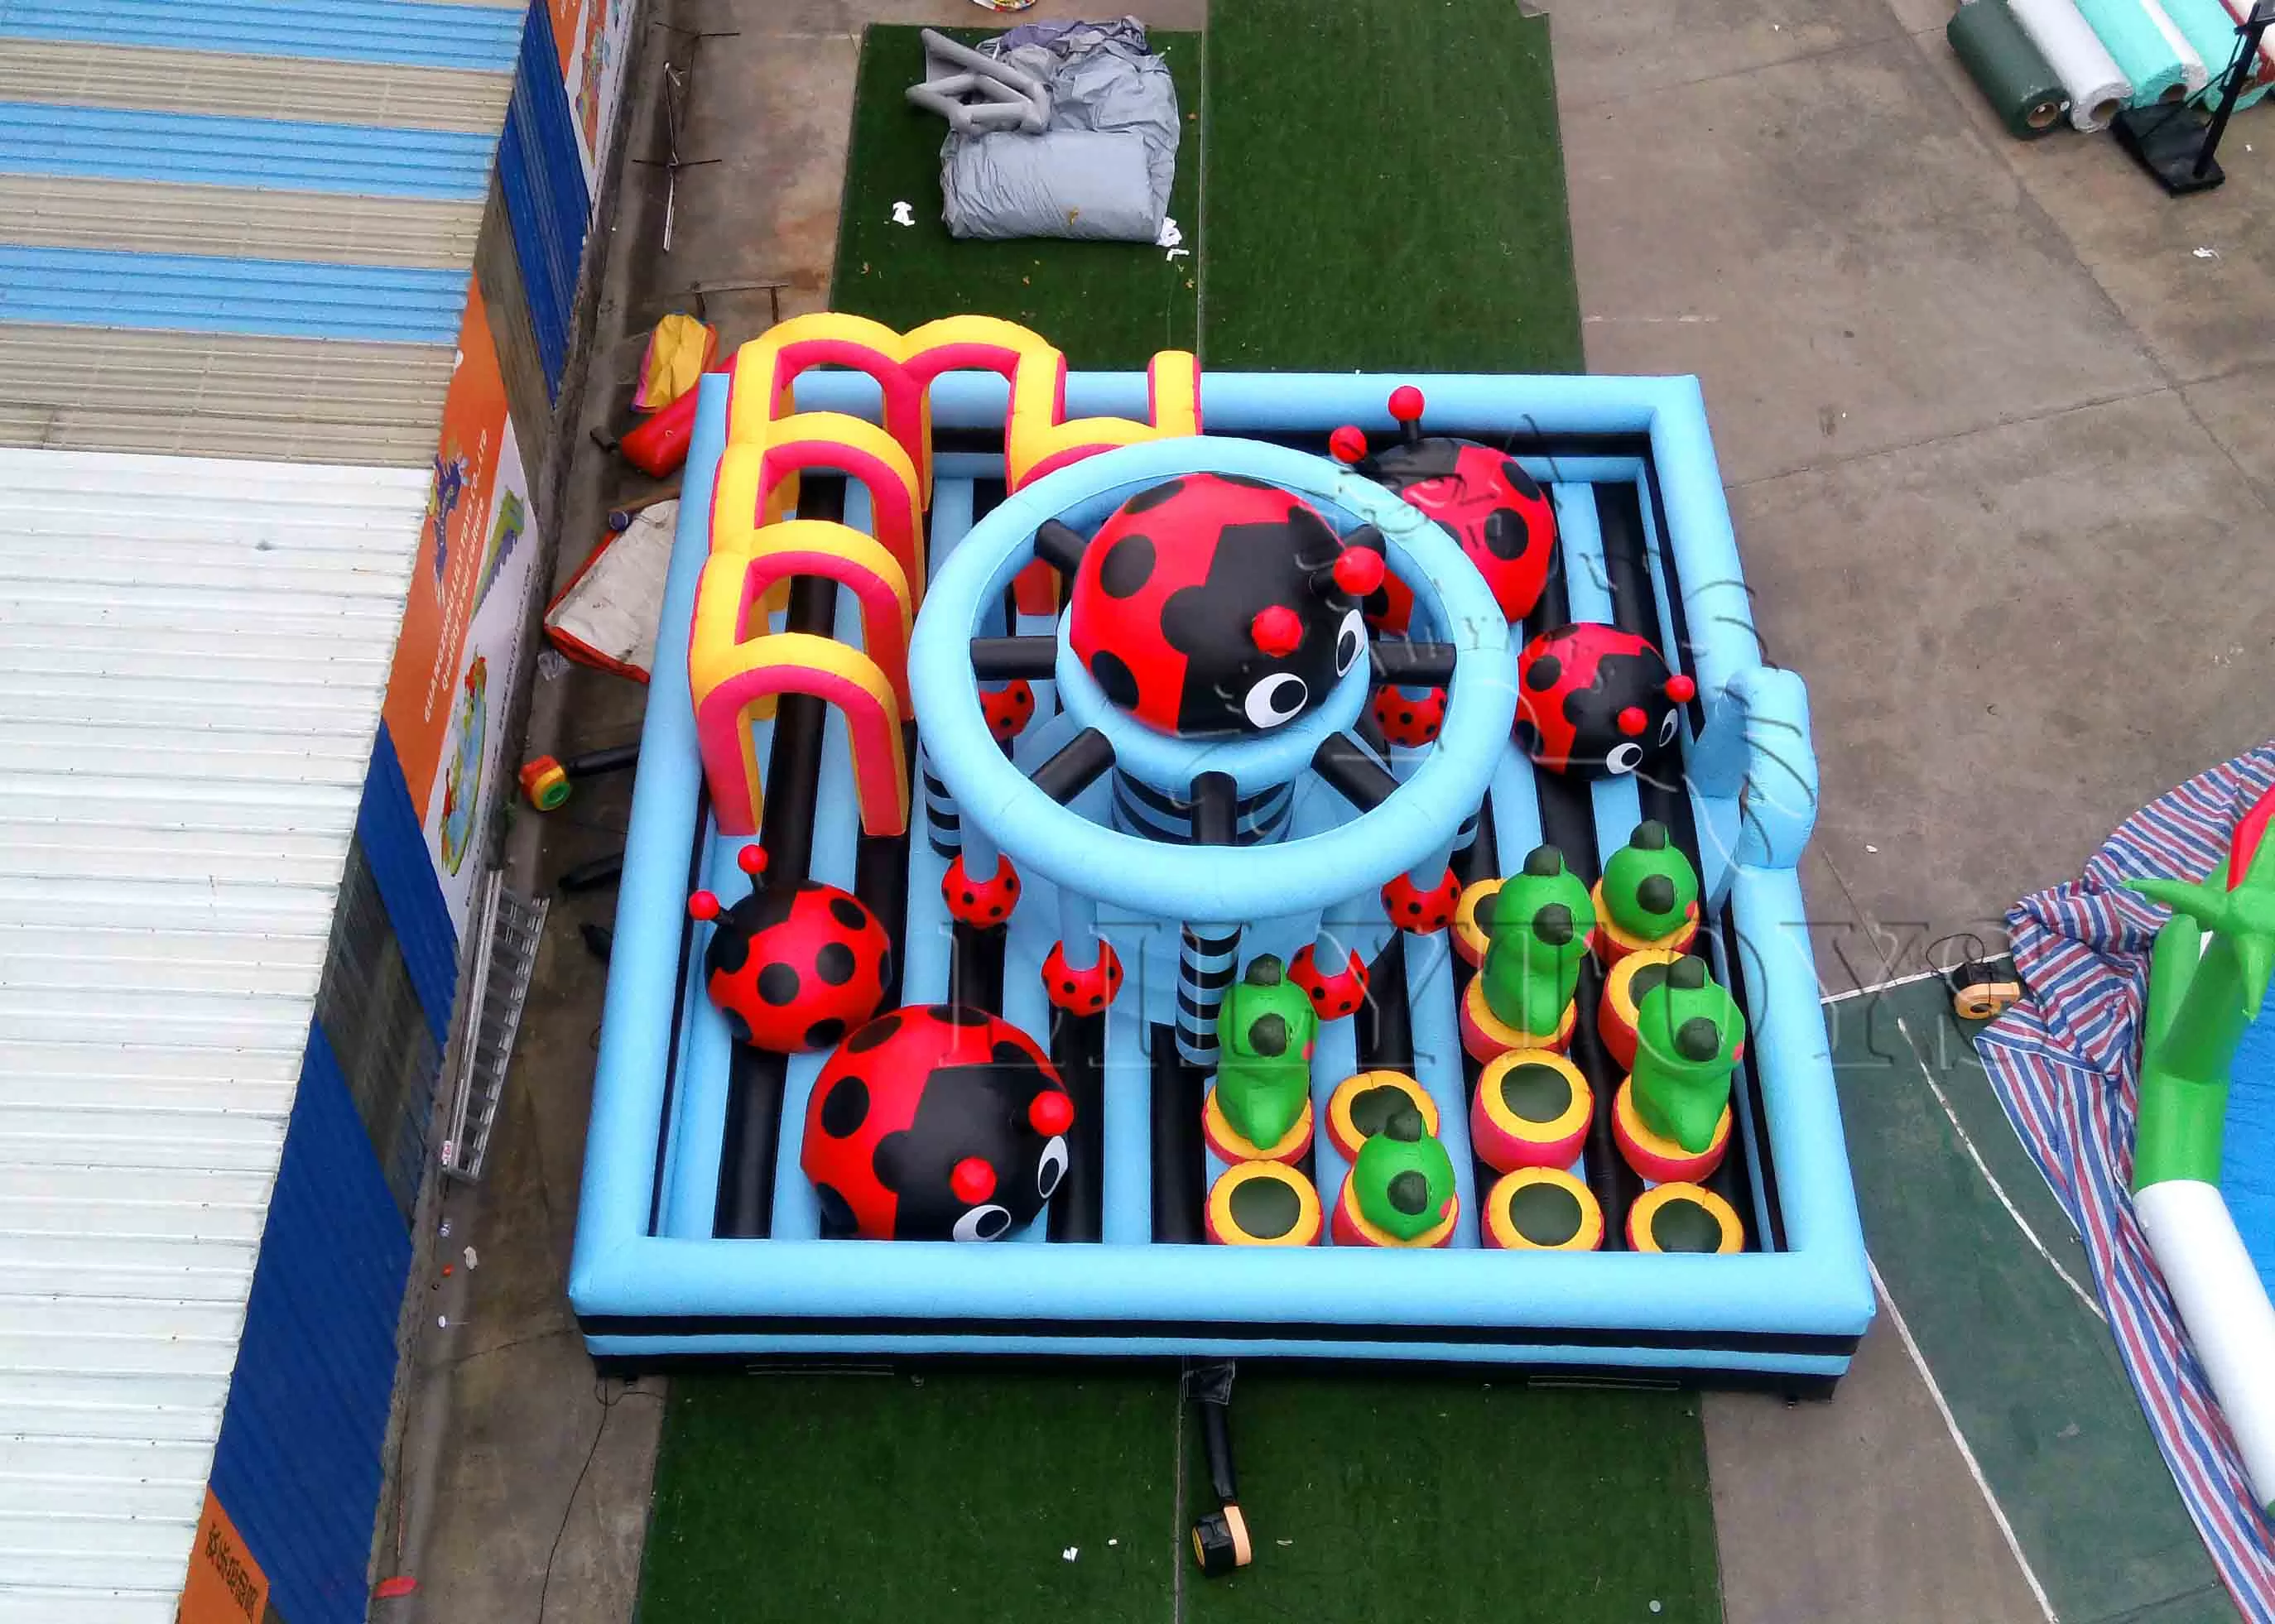 big playground funcity-45